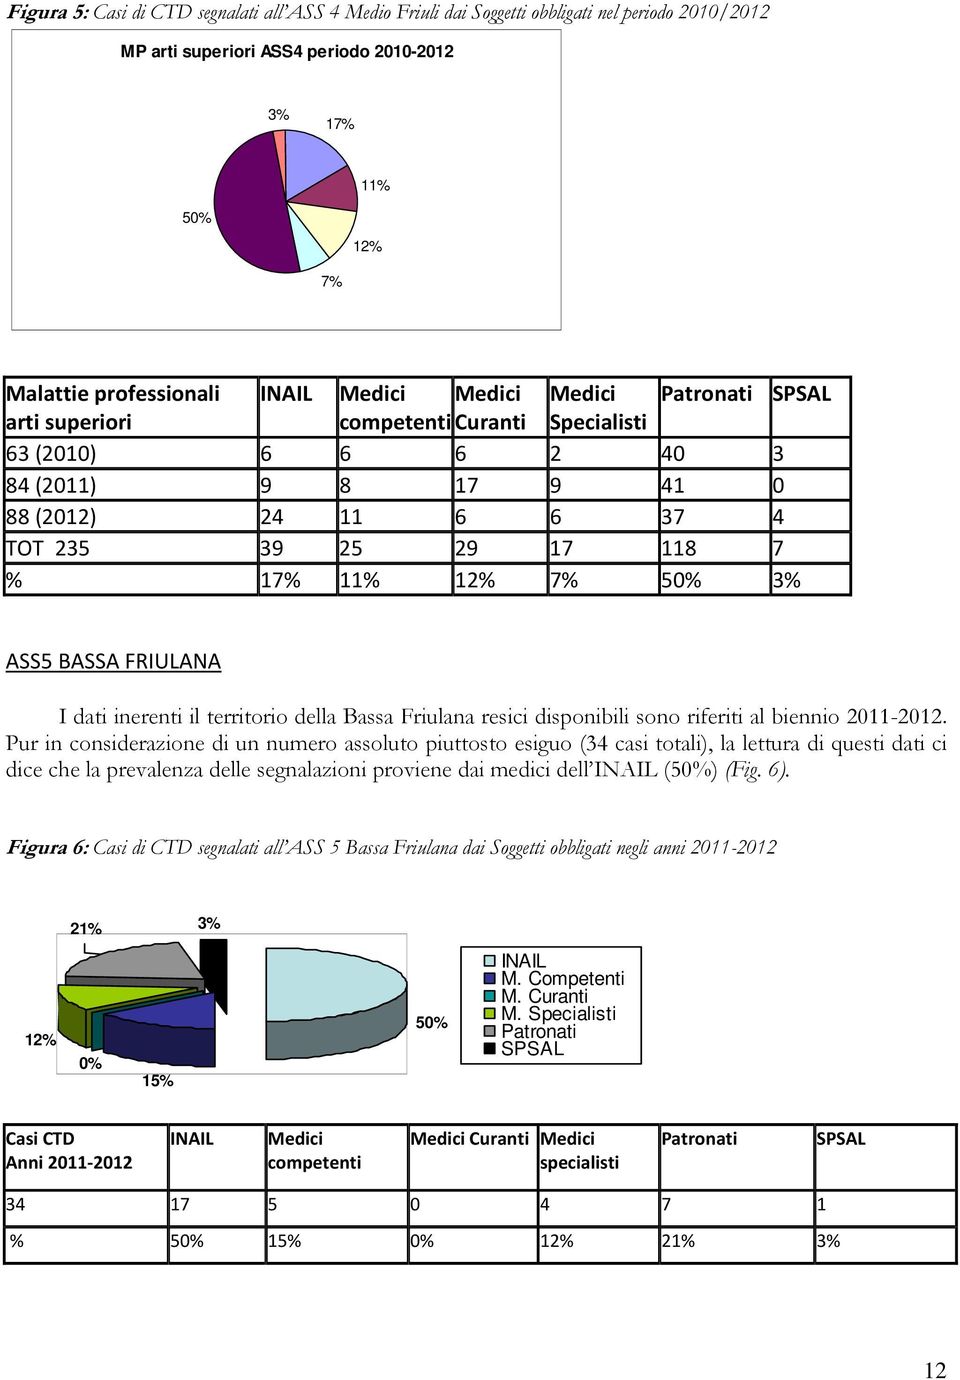 ASS5 BASSA FRIULANA I dati inerenti il territorio della Bassa Friulana resici disponibili sono riferiti al biennio 2011-2012.